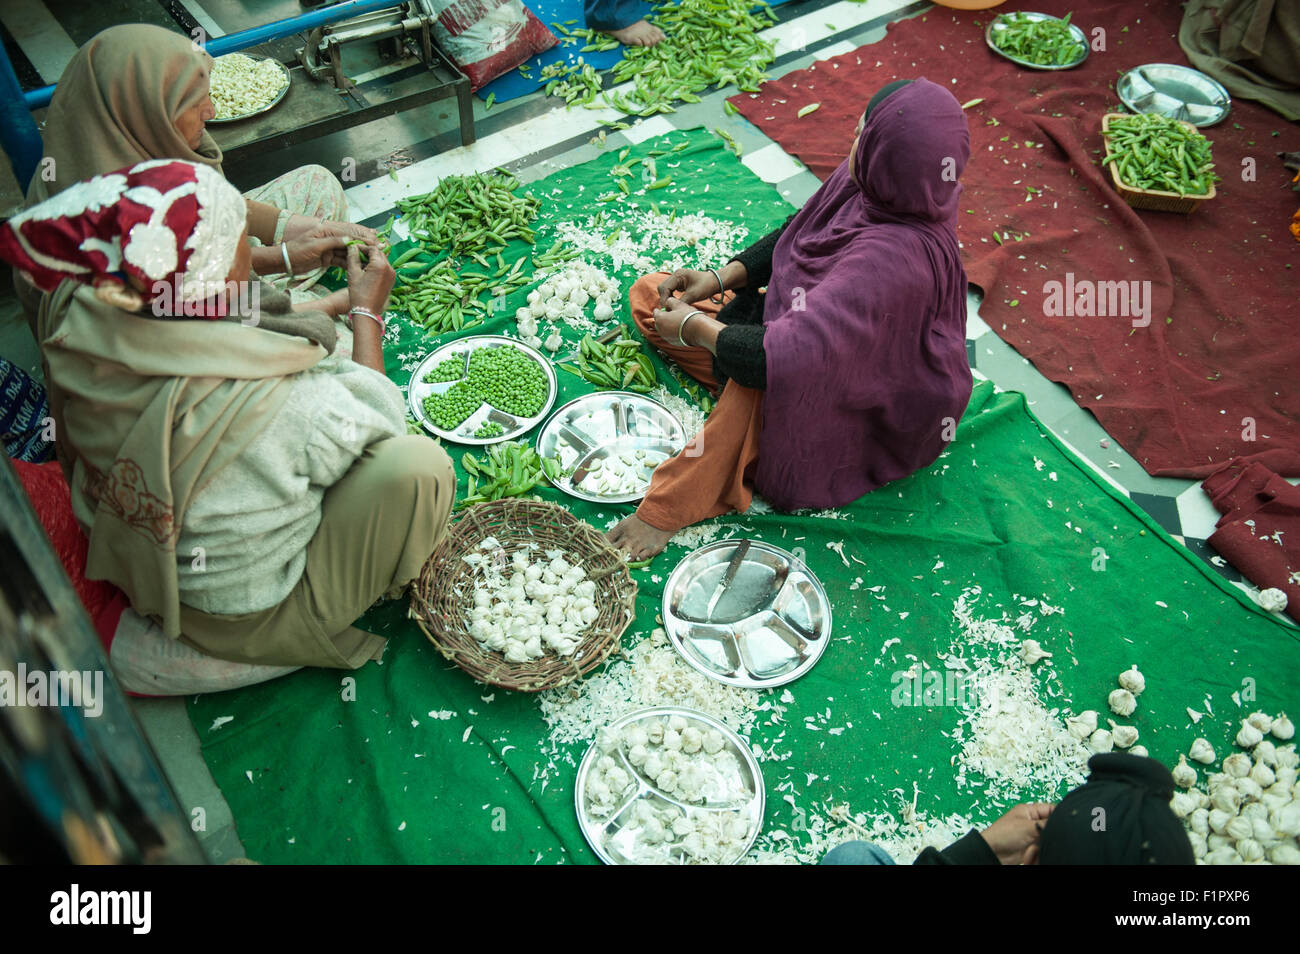 Amritsar, Punjab, en Inde. Le Temple d'Or - Harmandir Sahib ; trois femmes siègent à la préparation des repas, cuisine Langar pois à écosser, éplucher l'ail. Banque D'Images